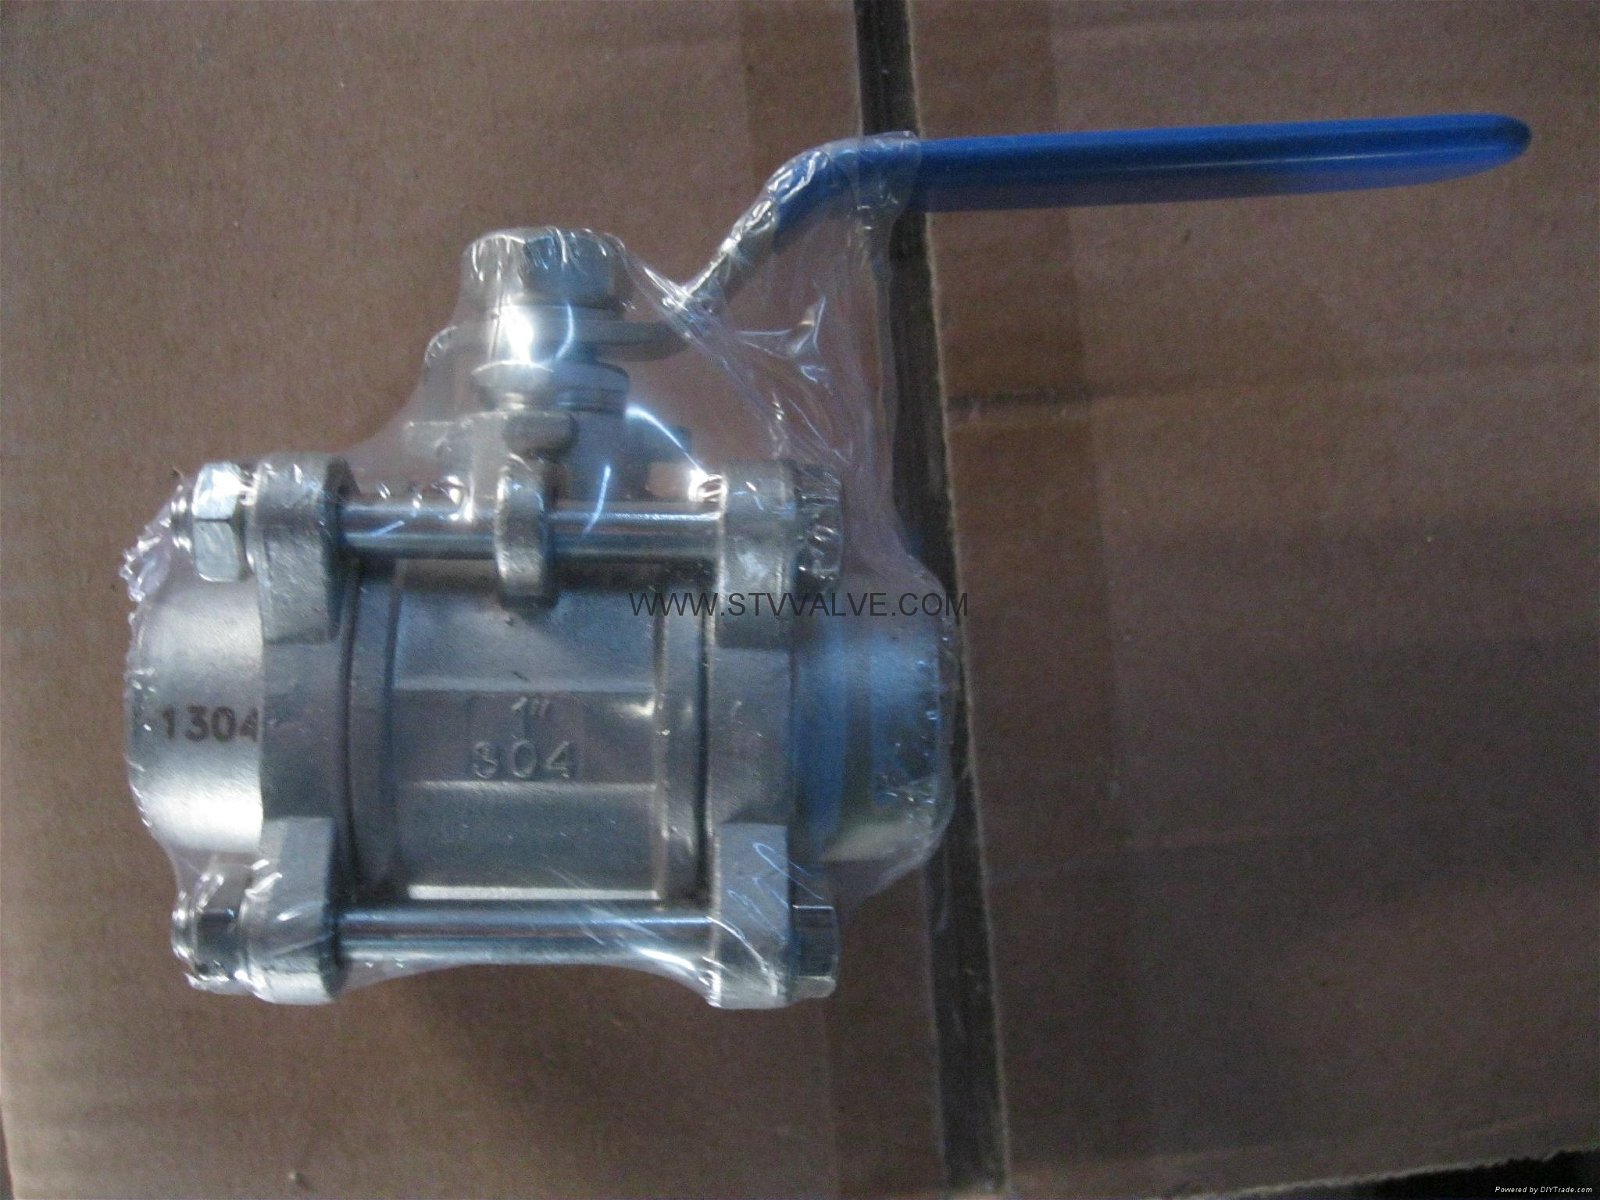  welded ball valve 2